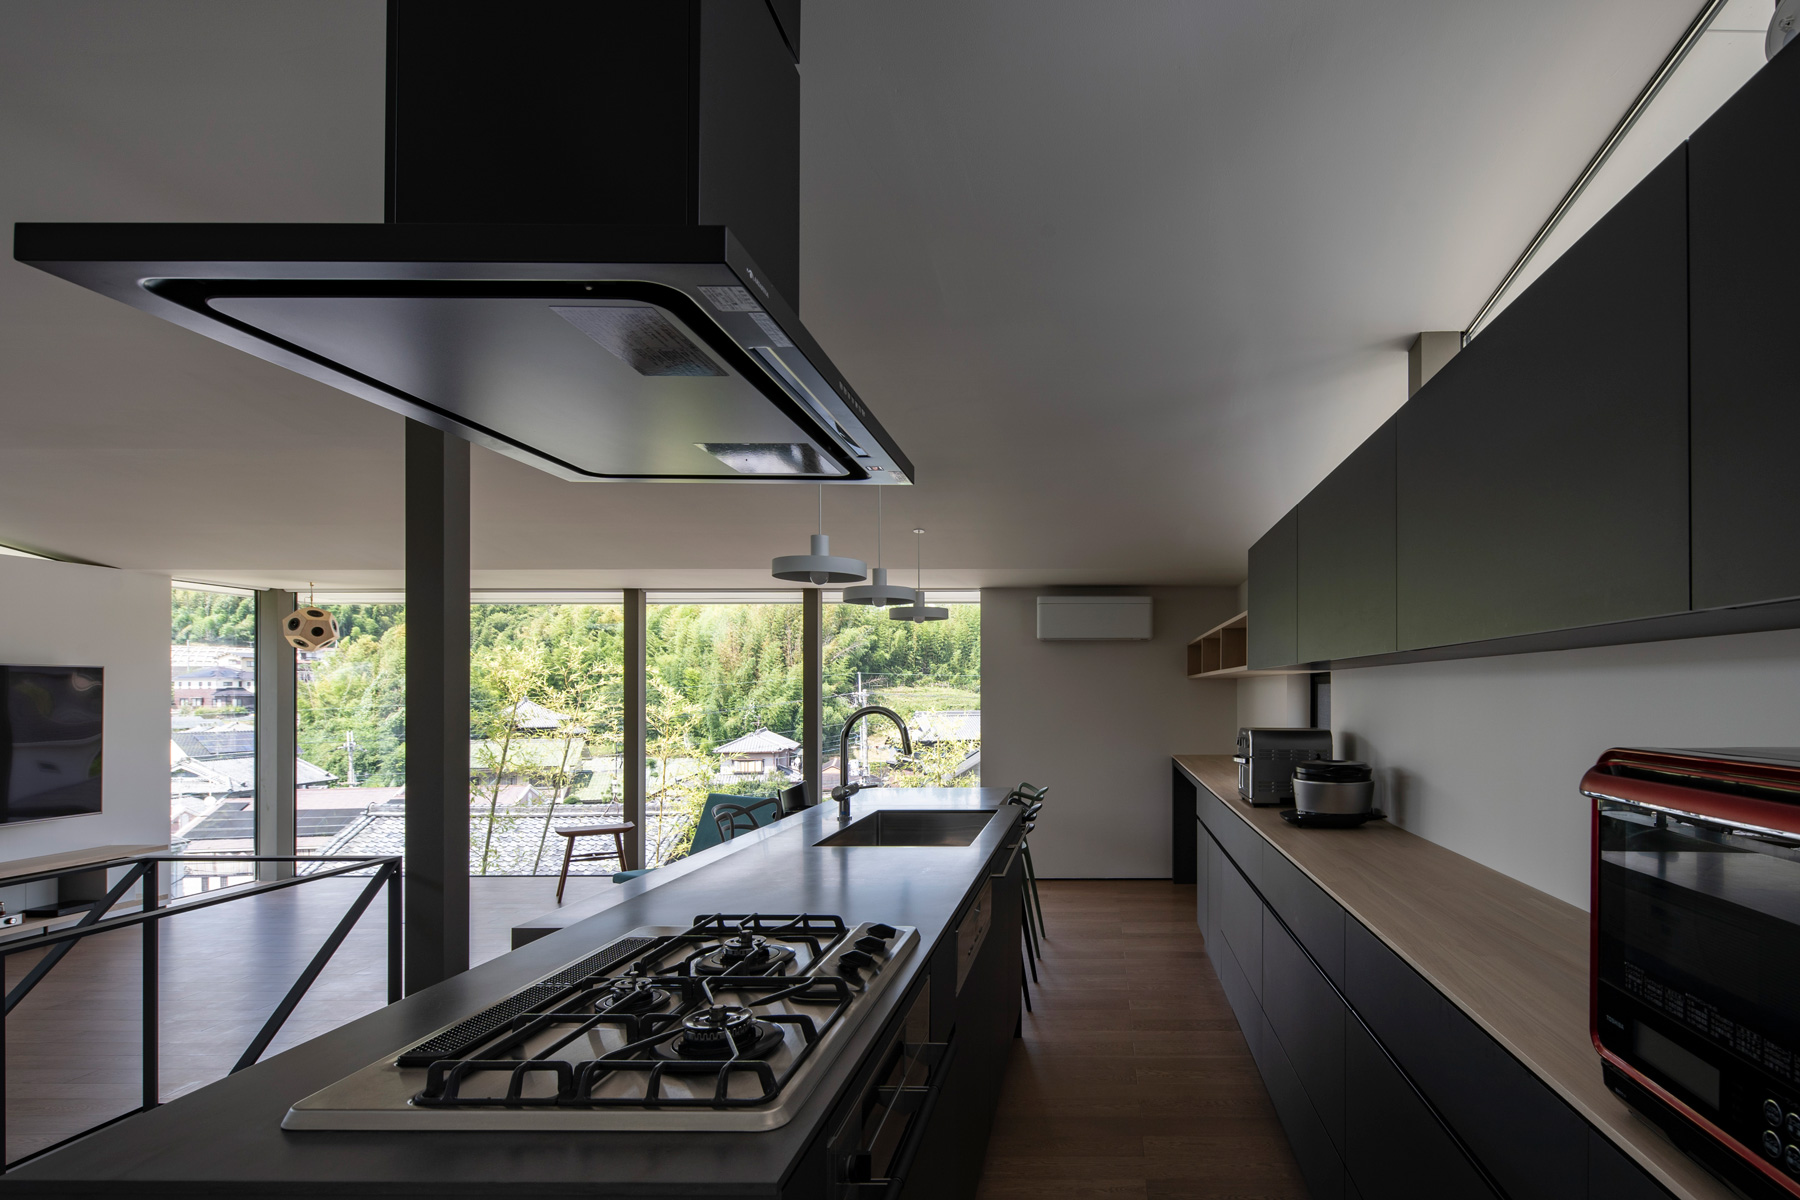 キッチンはリビング全体と窓外の景色を眺めながら調理できるベストポジションに。